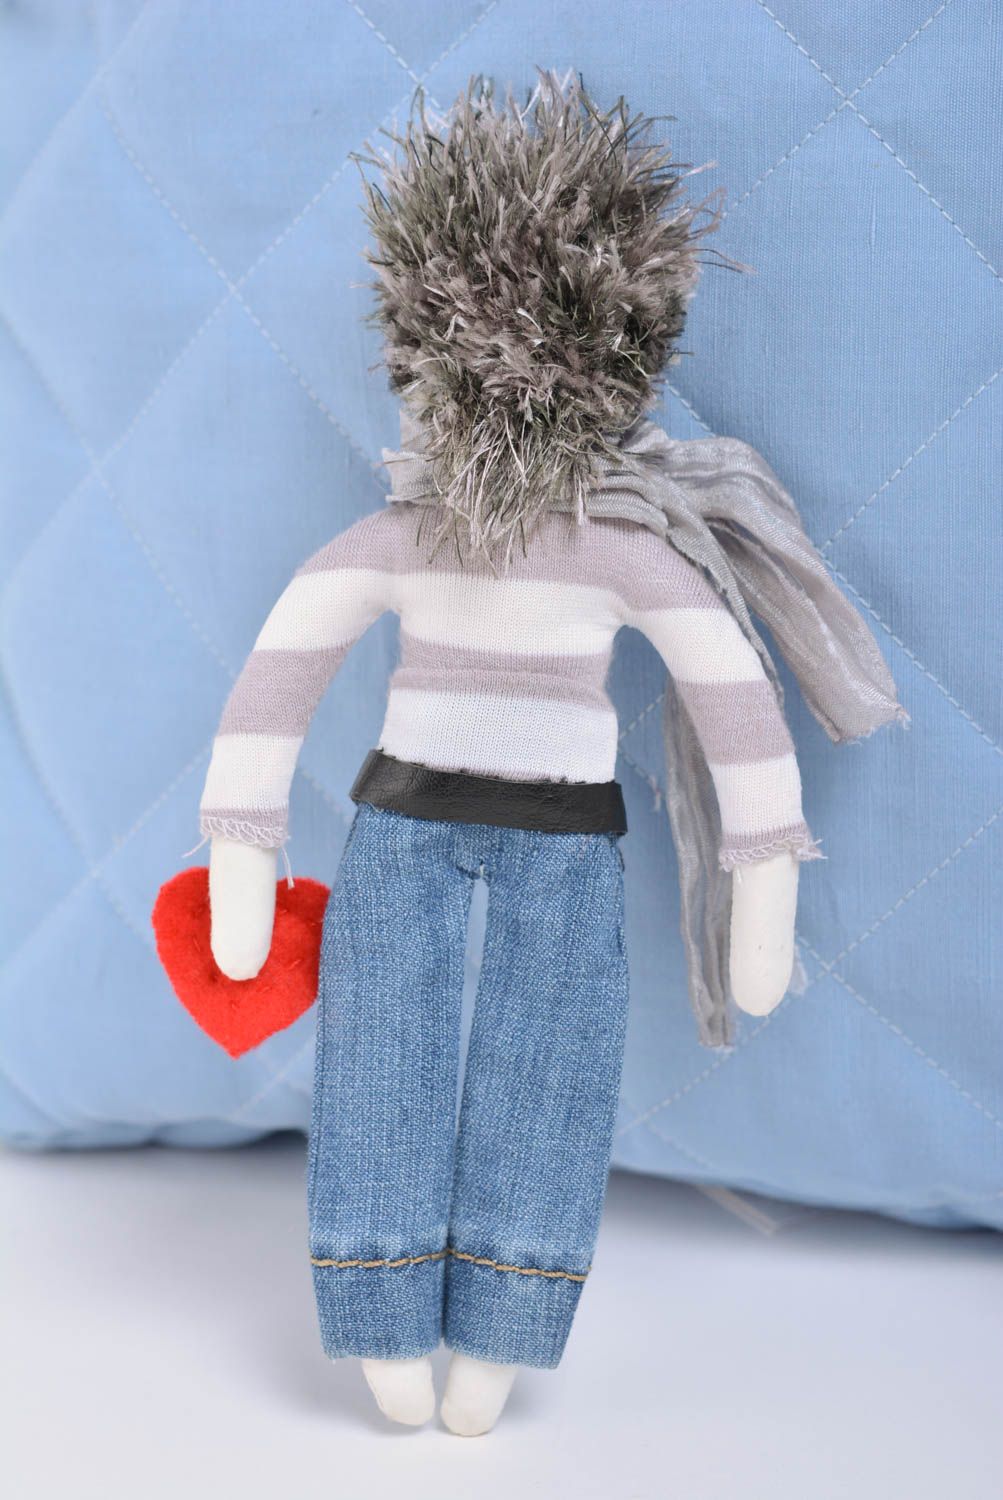 Авторская кукла мальчик с сердцем небольшая красивая в серых тонах ручная работа фото 3